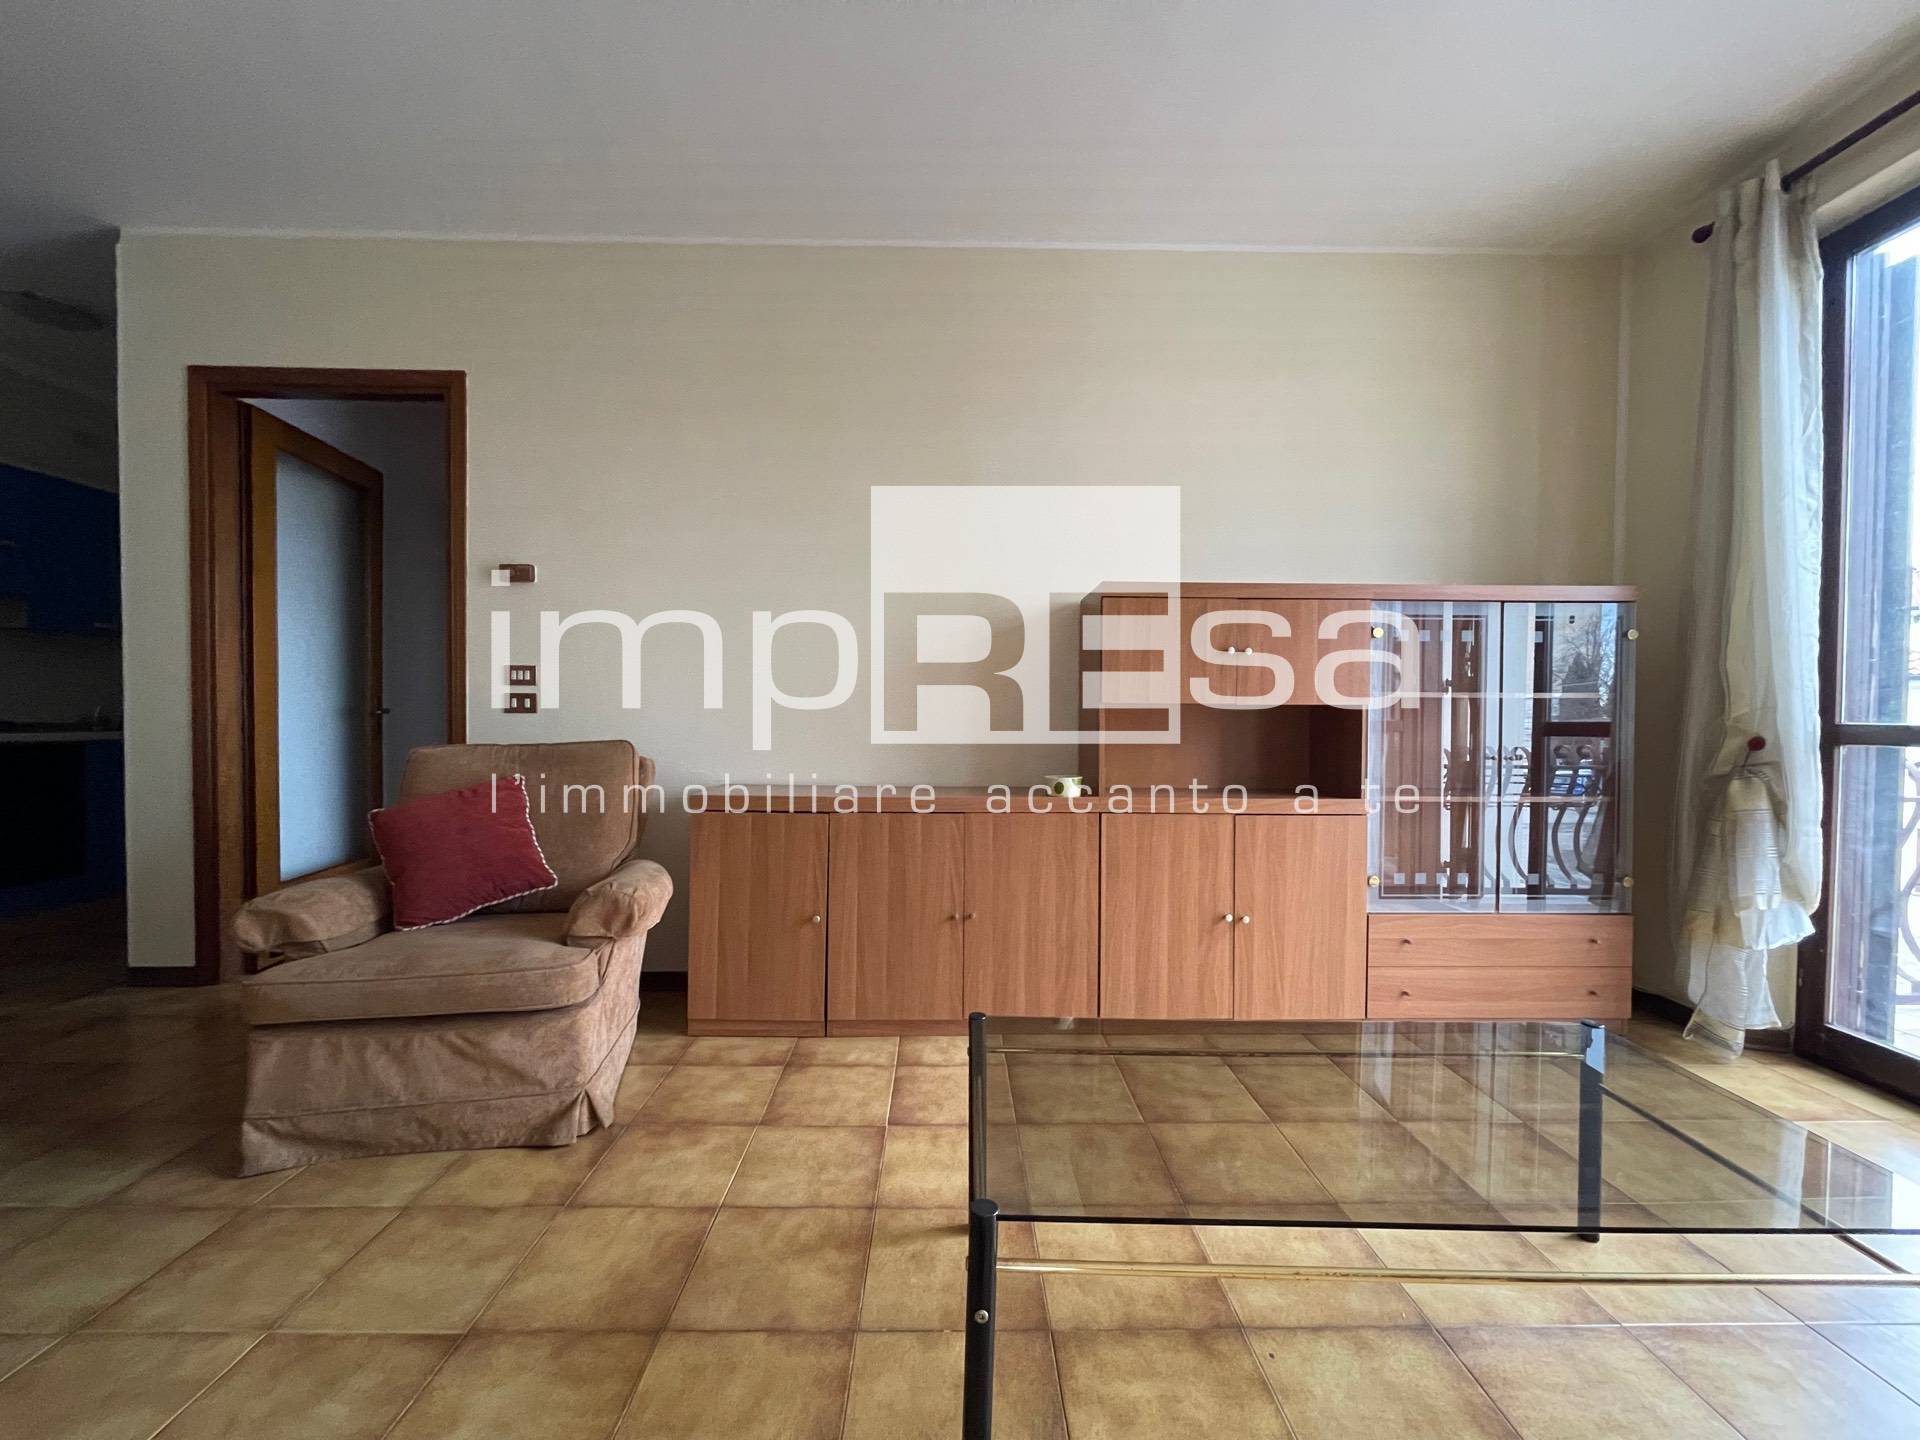 Appartamento in vendita a Villorba, 3 locali, zona ane, prezzo € 86.000 | PortaleAgenzieImmobiliari.it